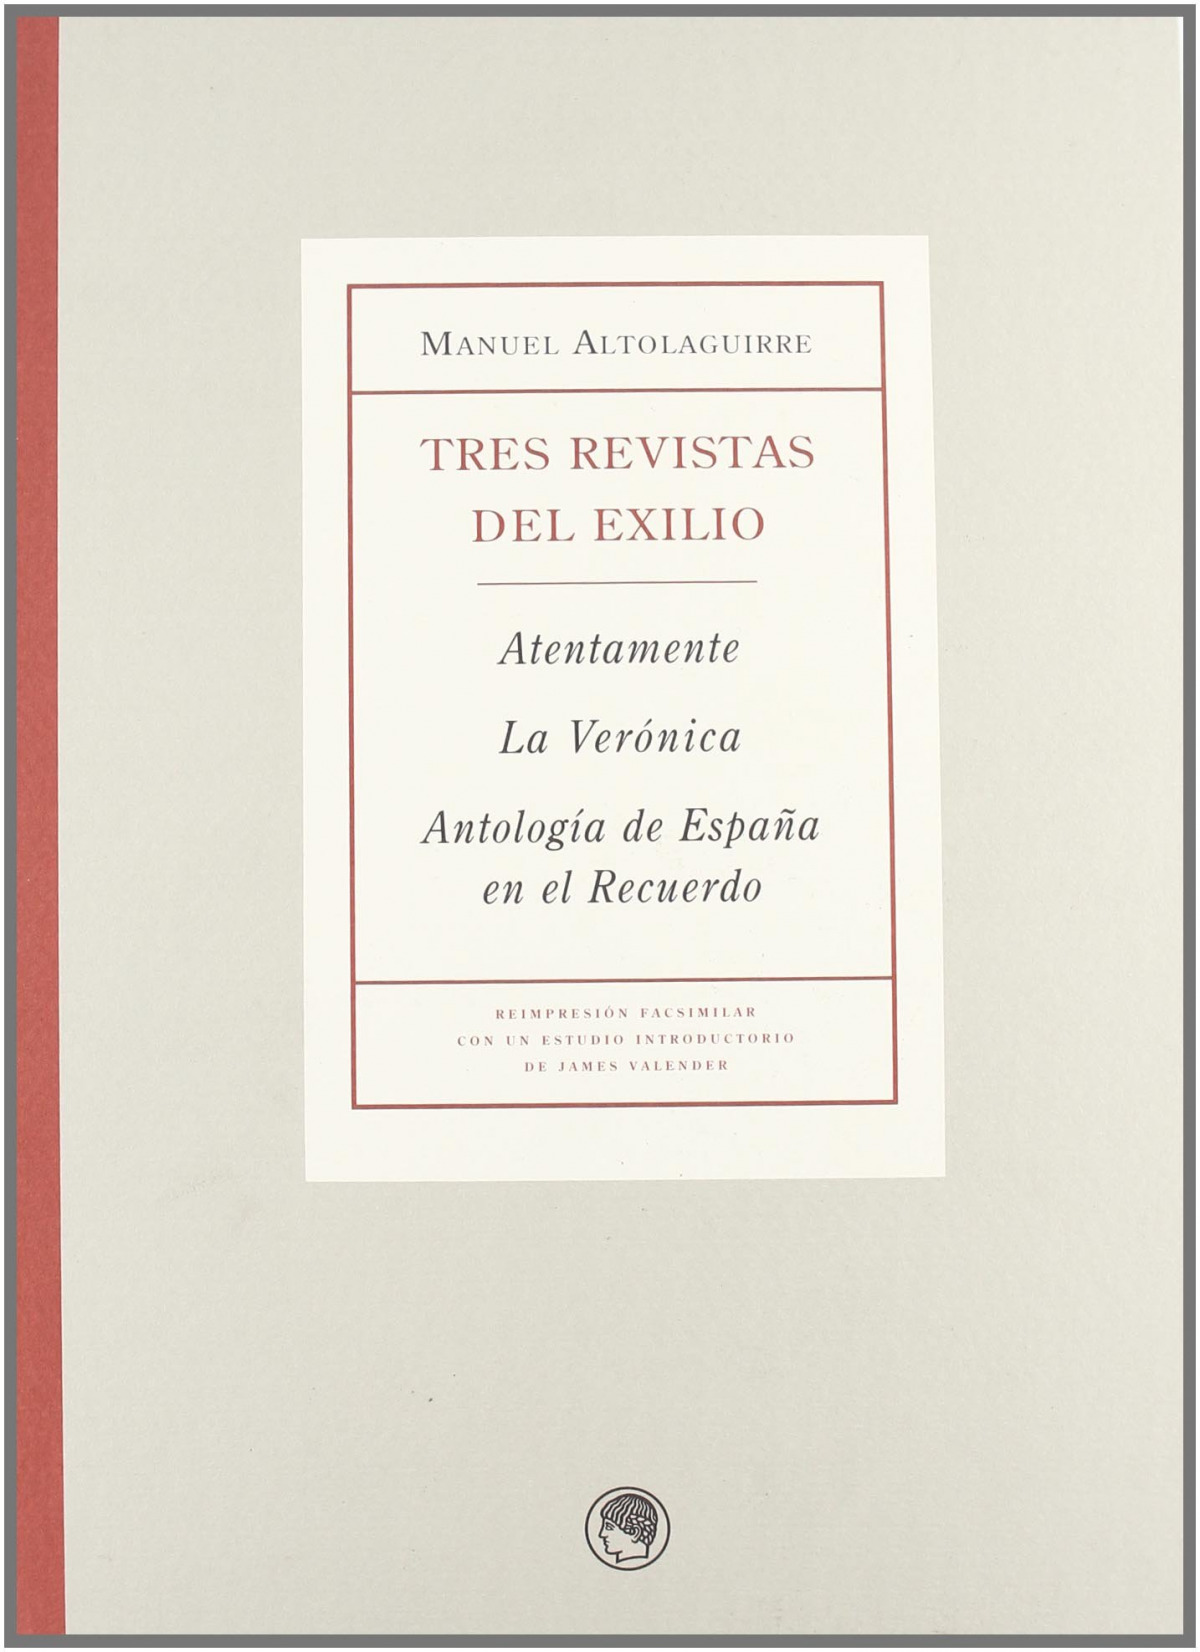 Manuel Altolaguirre, tres revistats del exilio Atentamente, la Verónic - Altolaguirre, Manuel